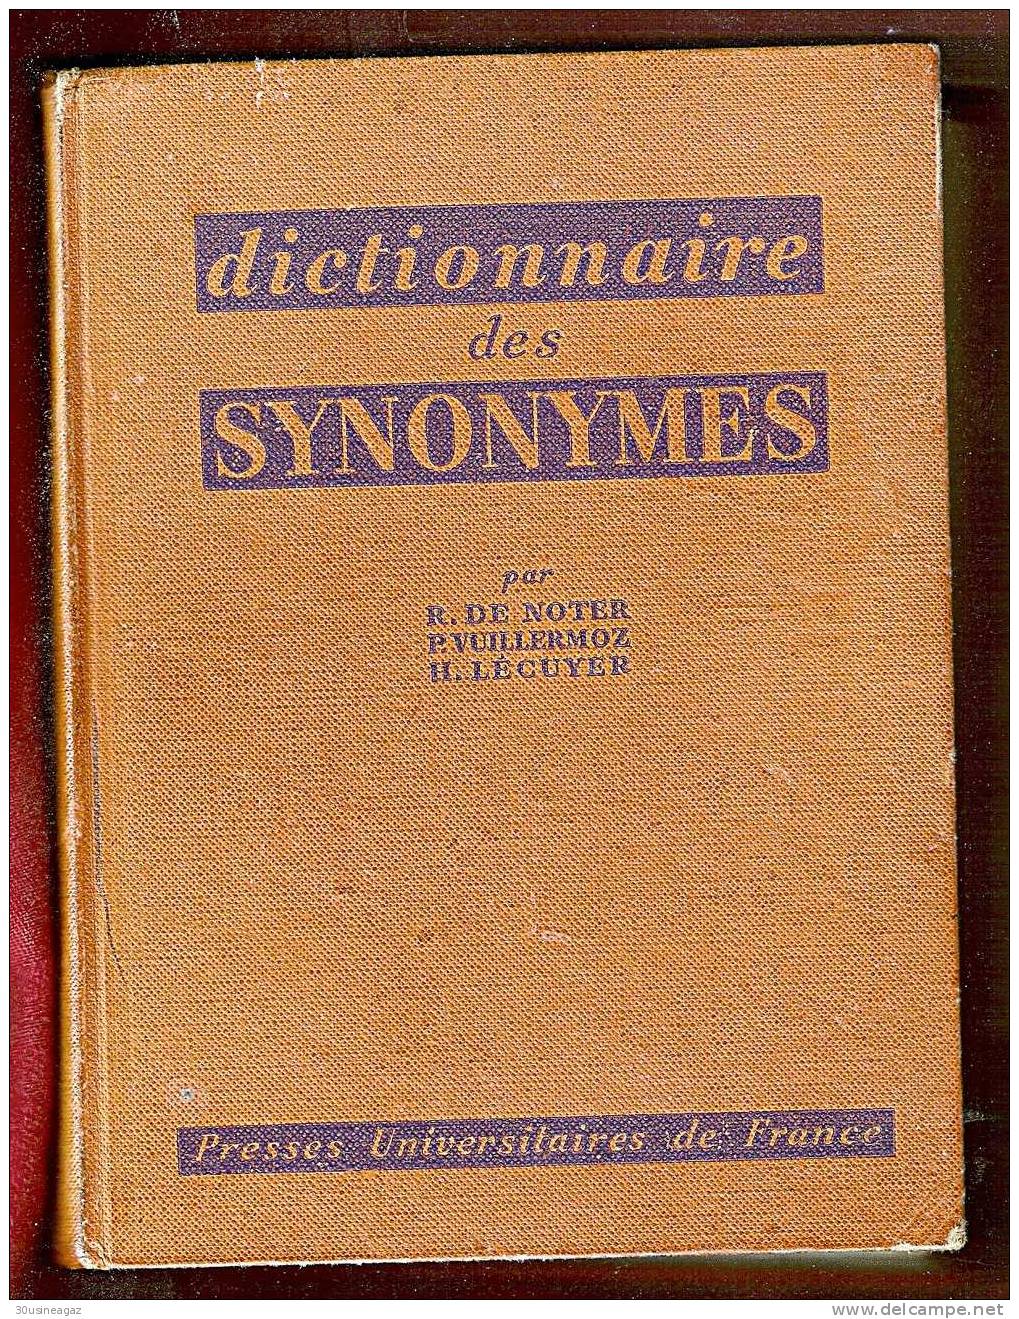 Dictionnaire Des Synonymes. R. De Noter,P. Vuillermoz, H.Lécuyer - Dictionnaires